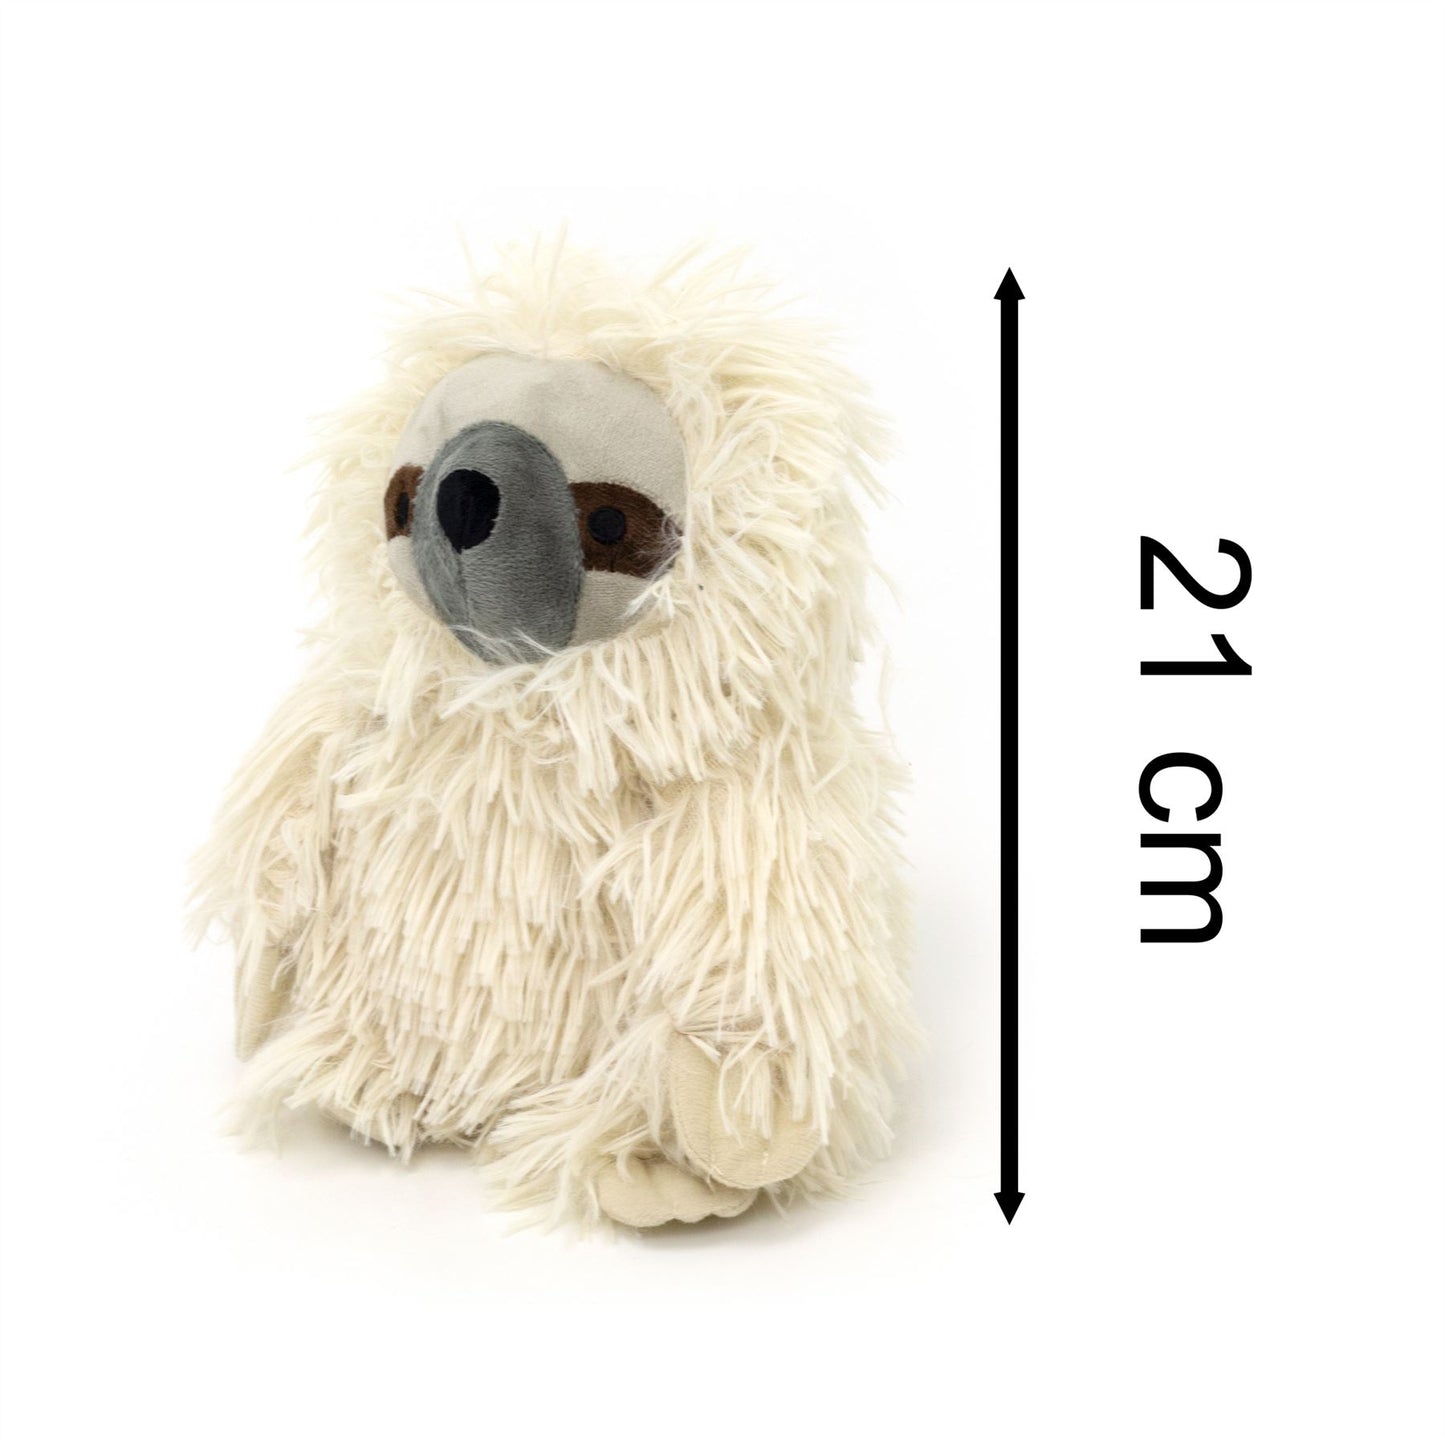 Shaggy Sloth Doorstop | Sloth Shaped Door Stop Fabric Animal Doorstop - Cream